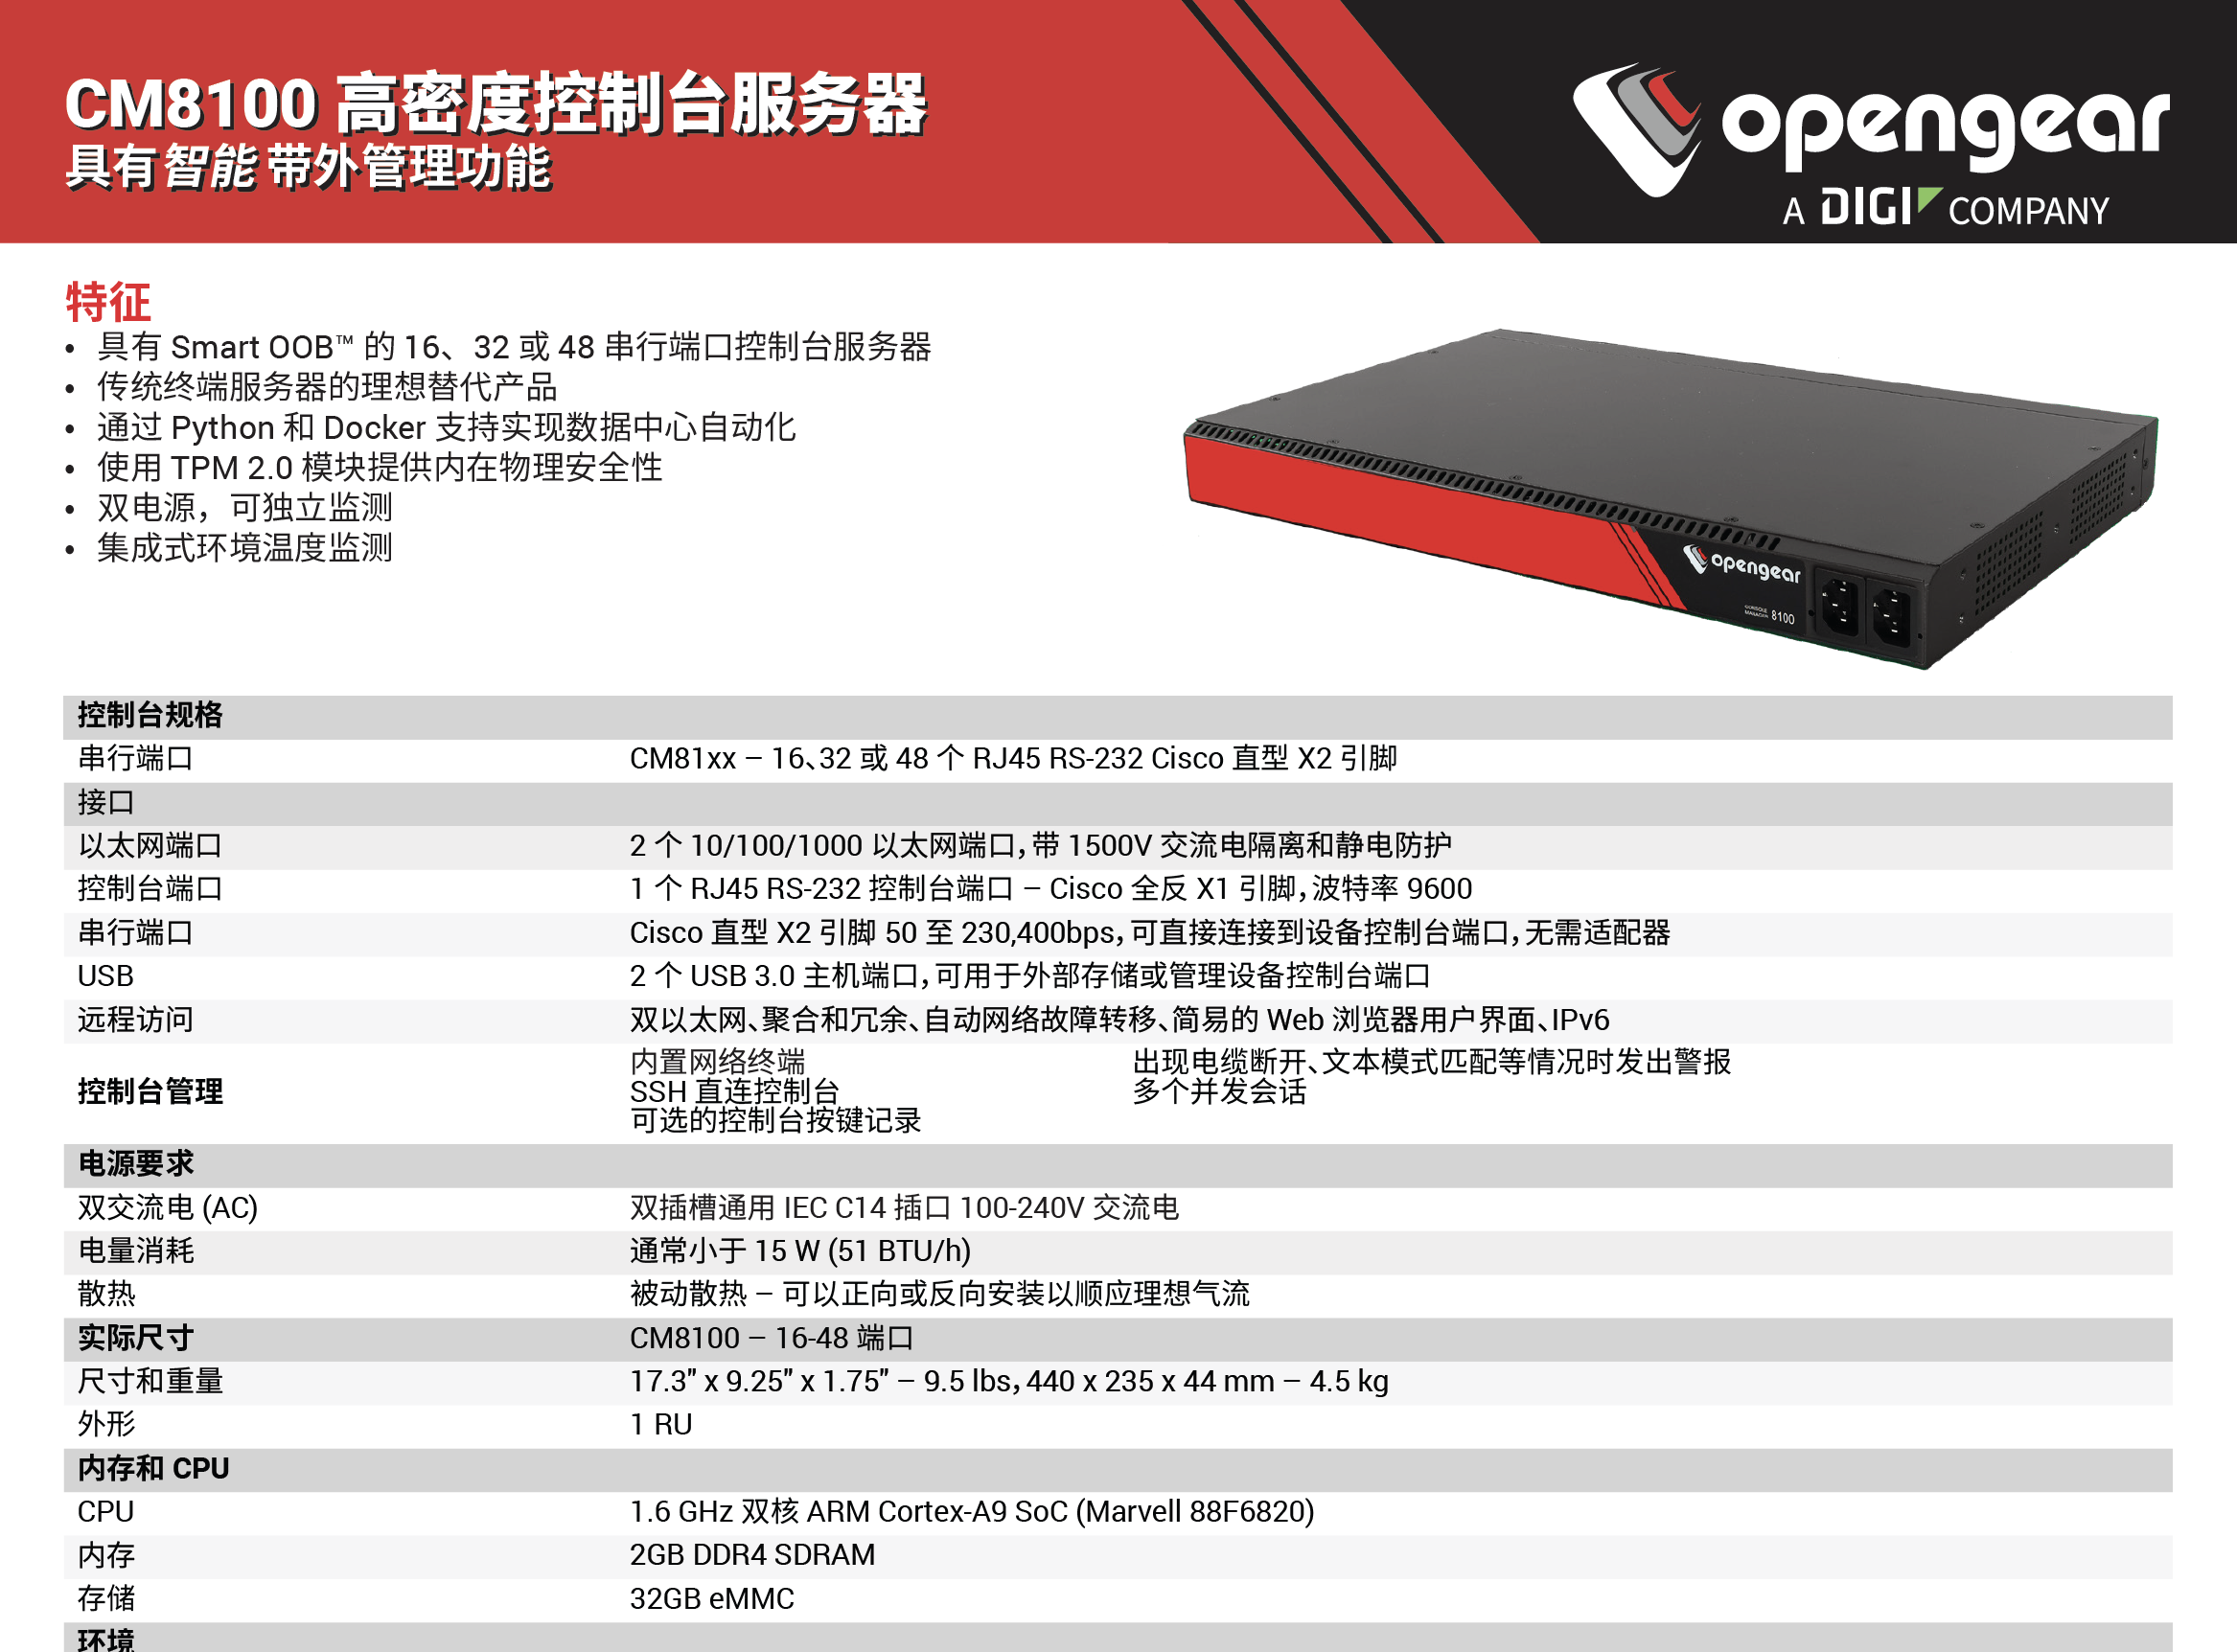 Opengear CM7116-2-DAC-CN、Opengear CM7116-2-SAC-CN、Opengear CM7132-2-DAC-CN、Opengear CM7148-2-DAC-CN